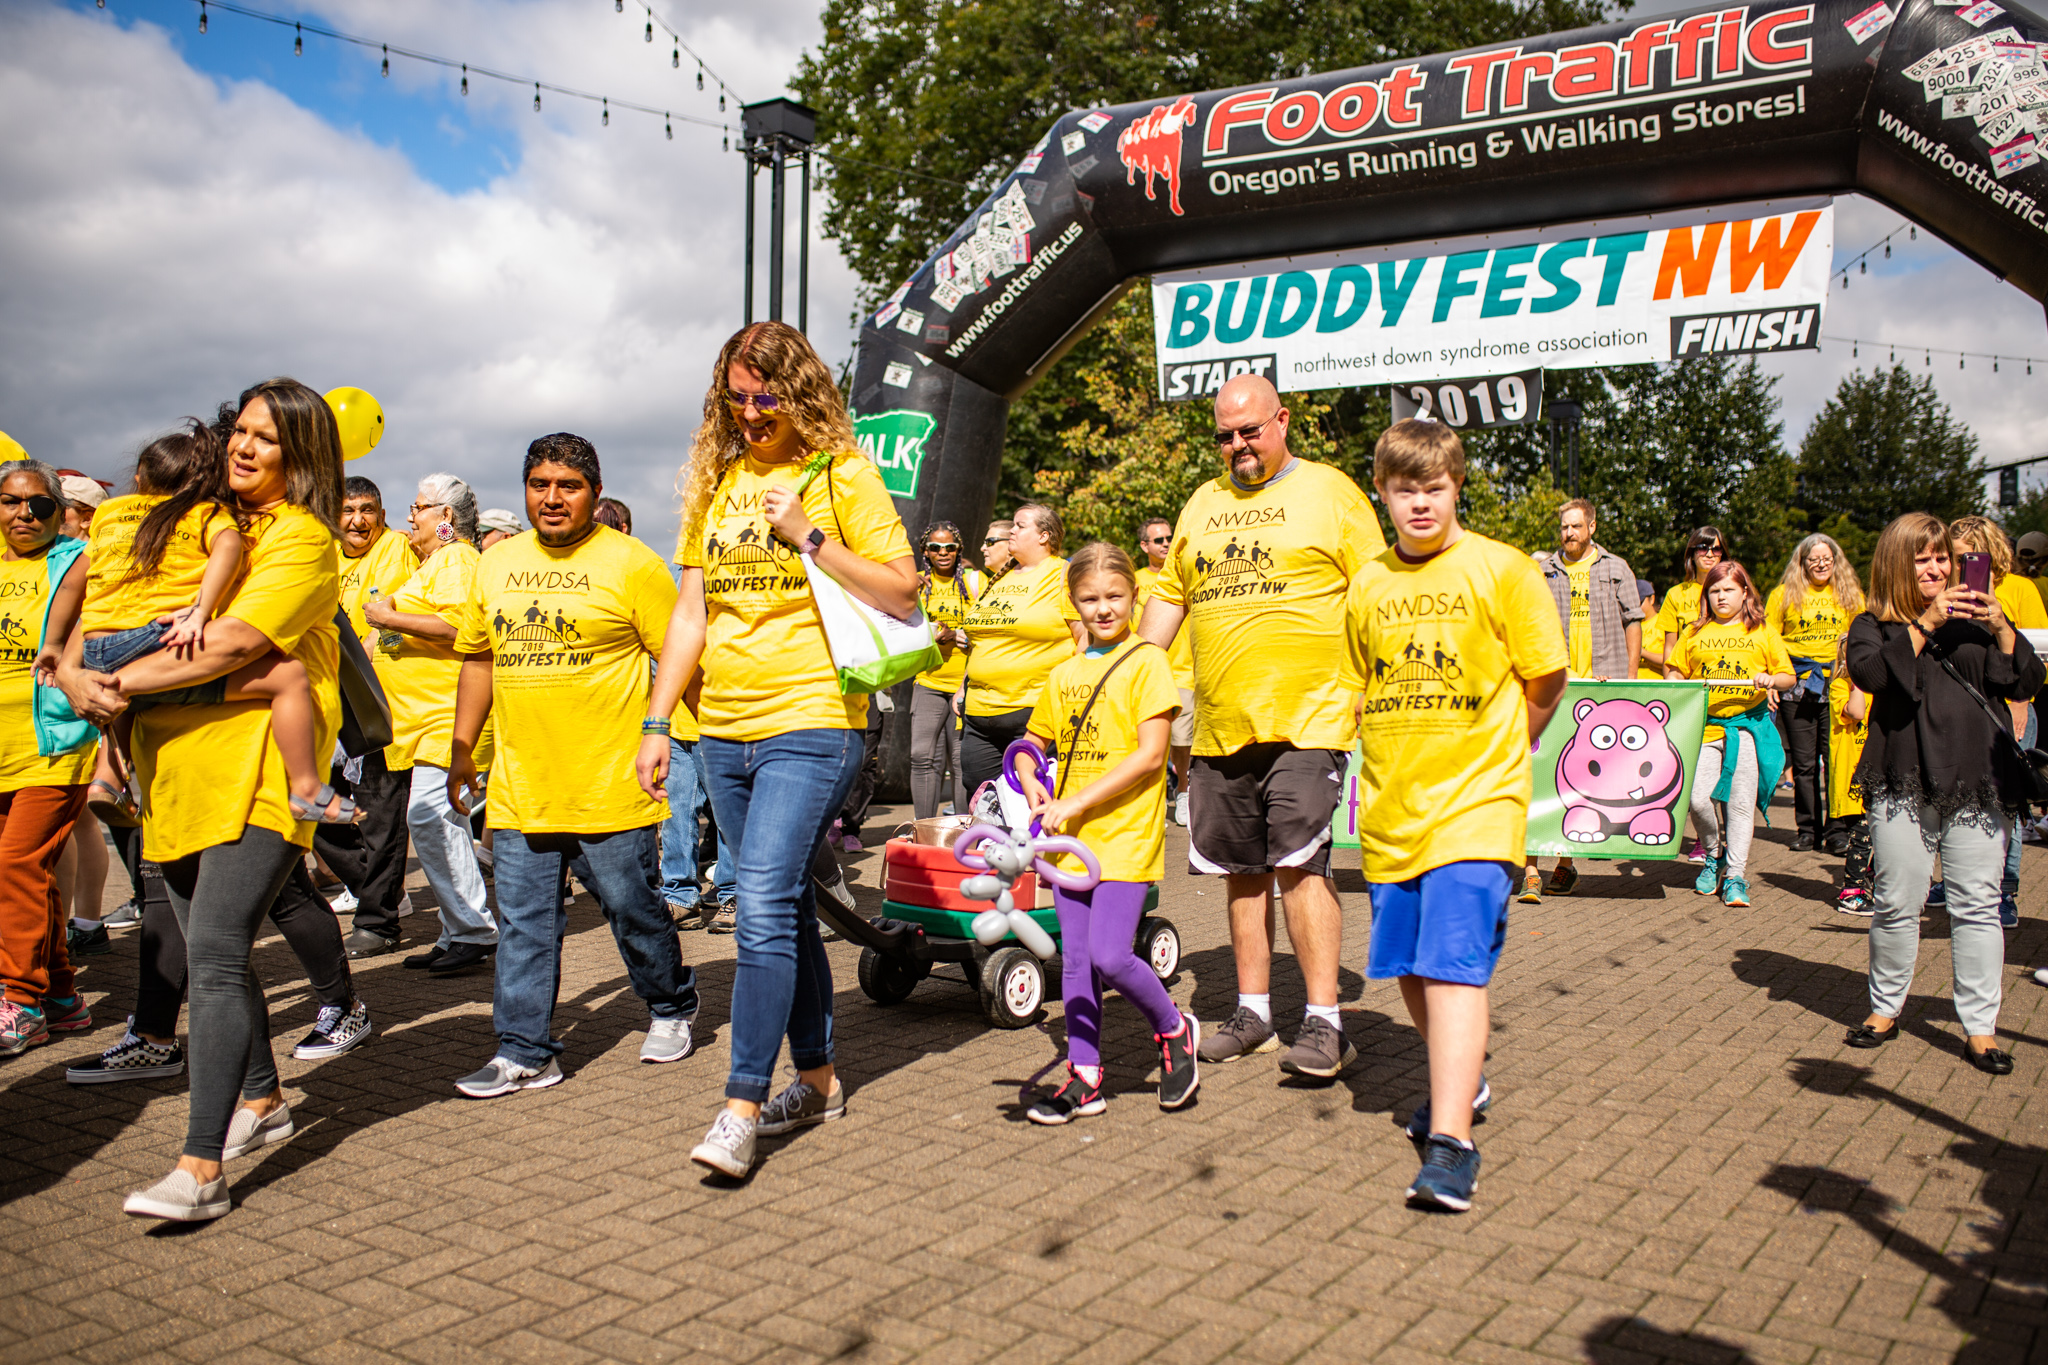 Buddy Fest NW / NWDSA Buddy Fest NW 2020